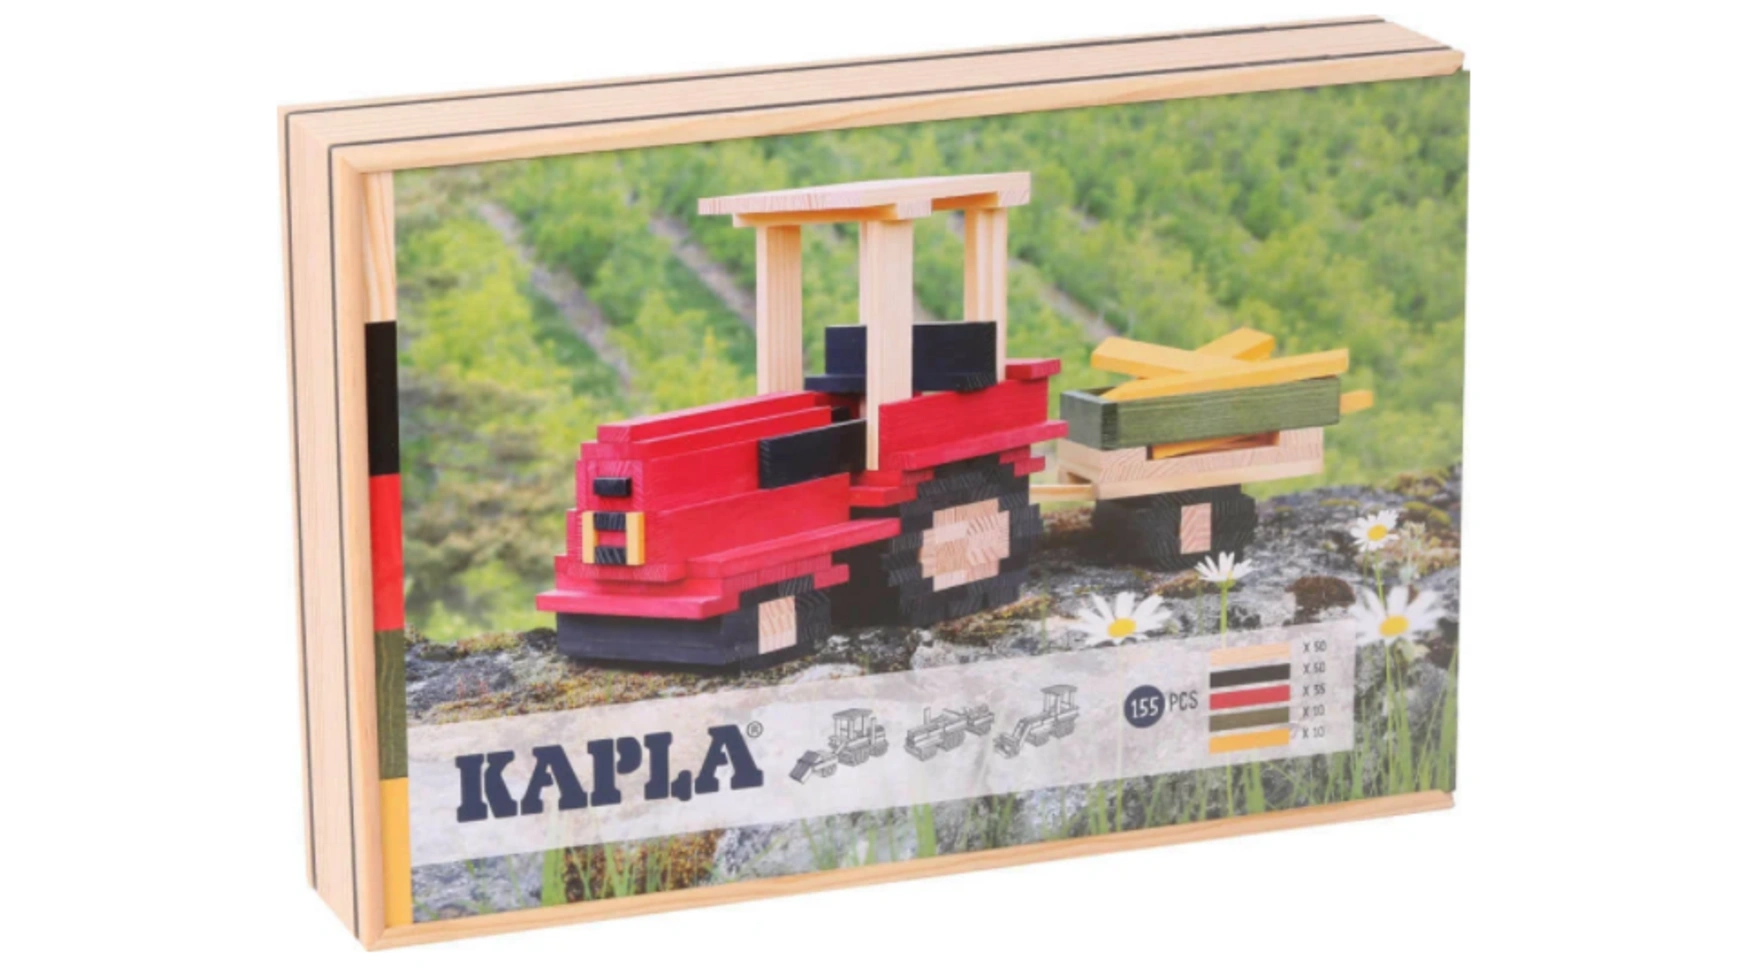 Kapla Конструктор трактора, 155 Деревянных плиток, Деревянные кубики